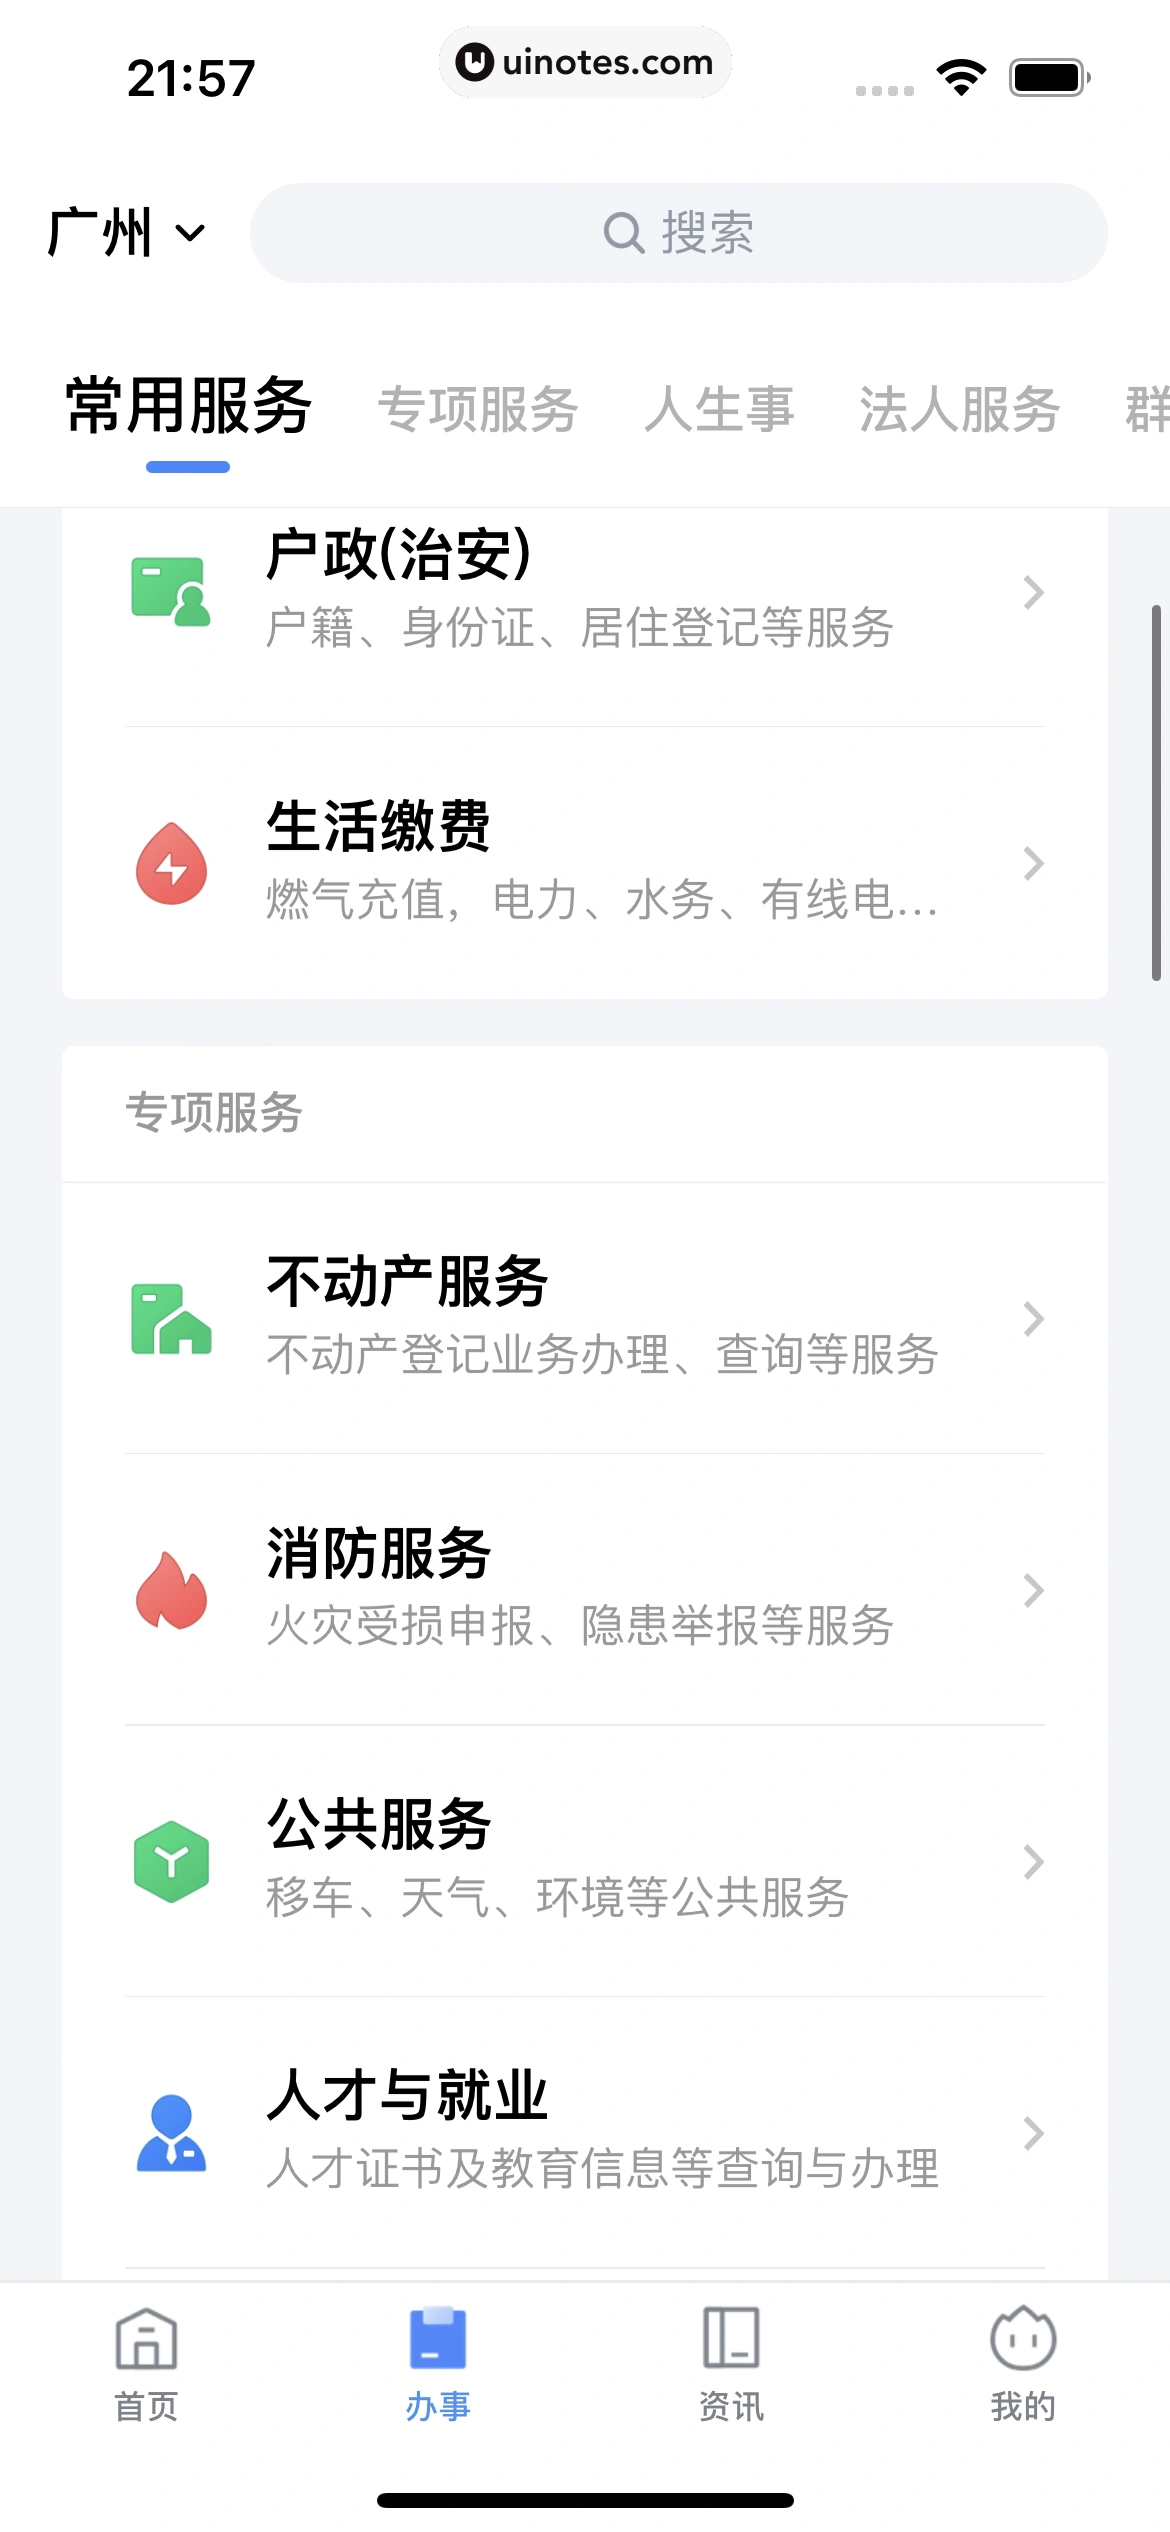 粤省事 App 截图 113 - UI Notes